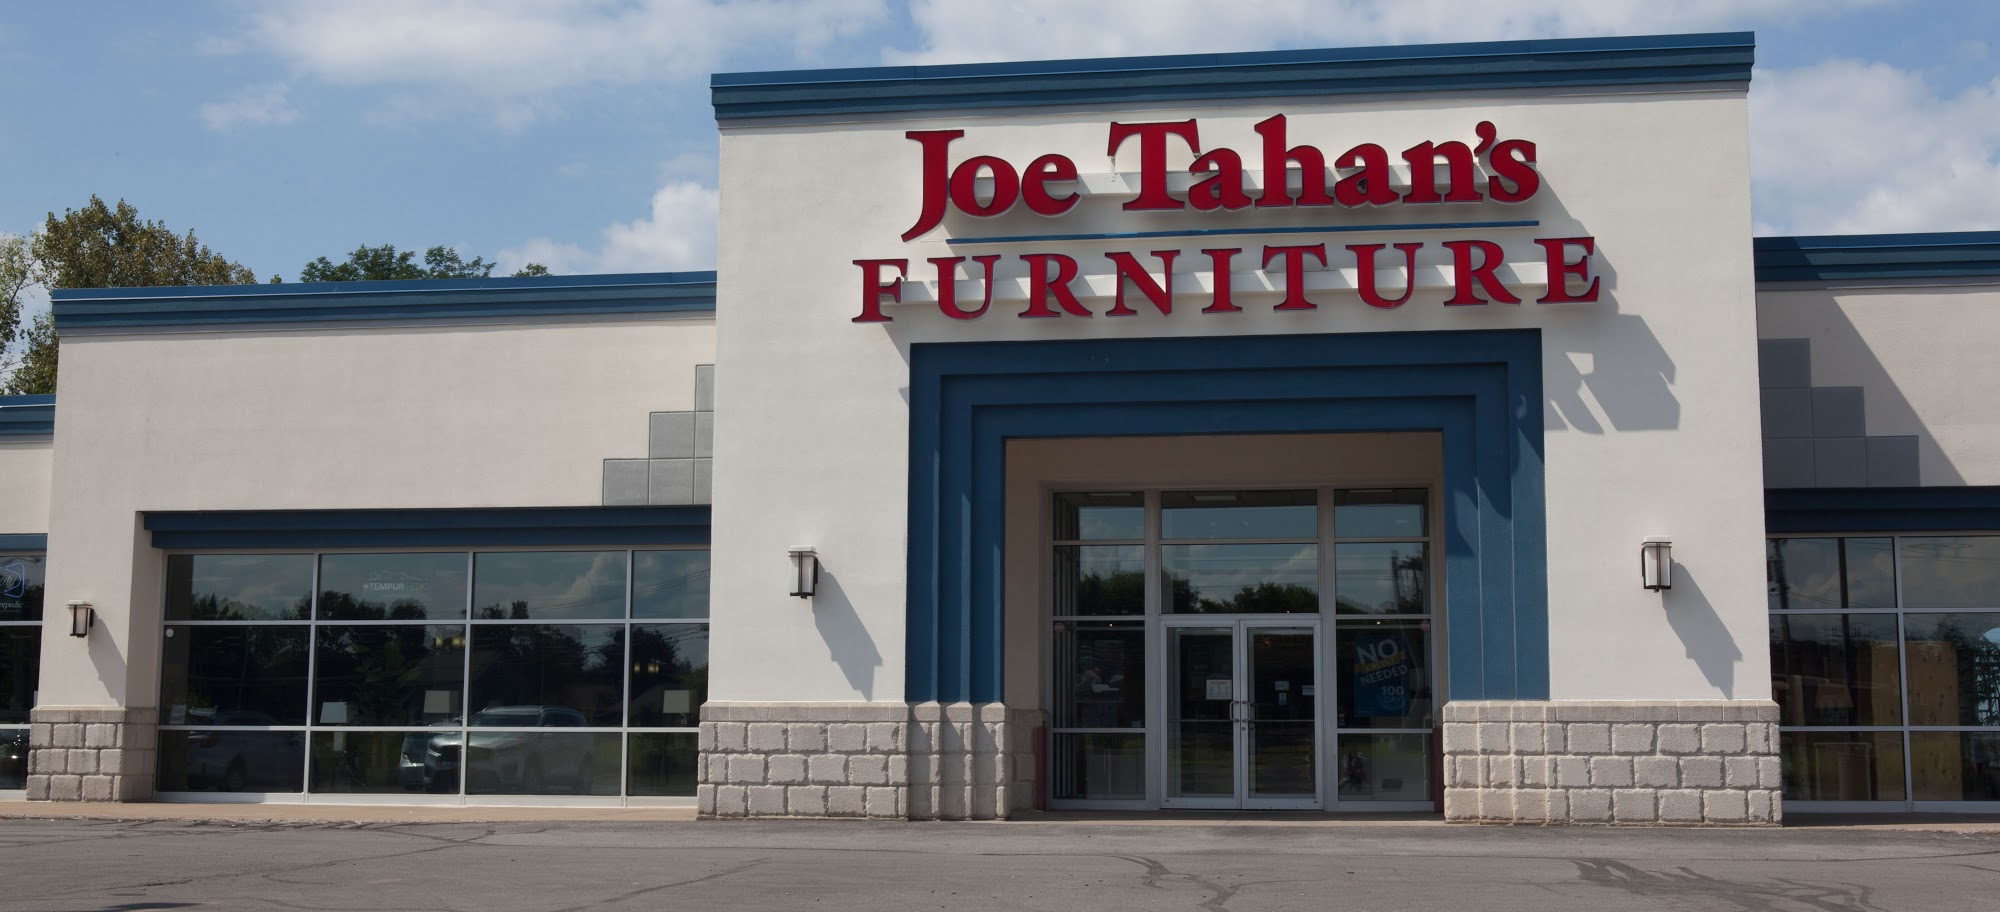 Joe Tahan's Furniture